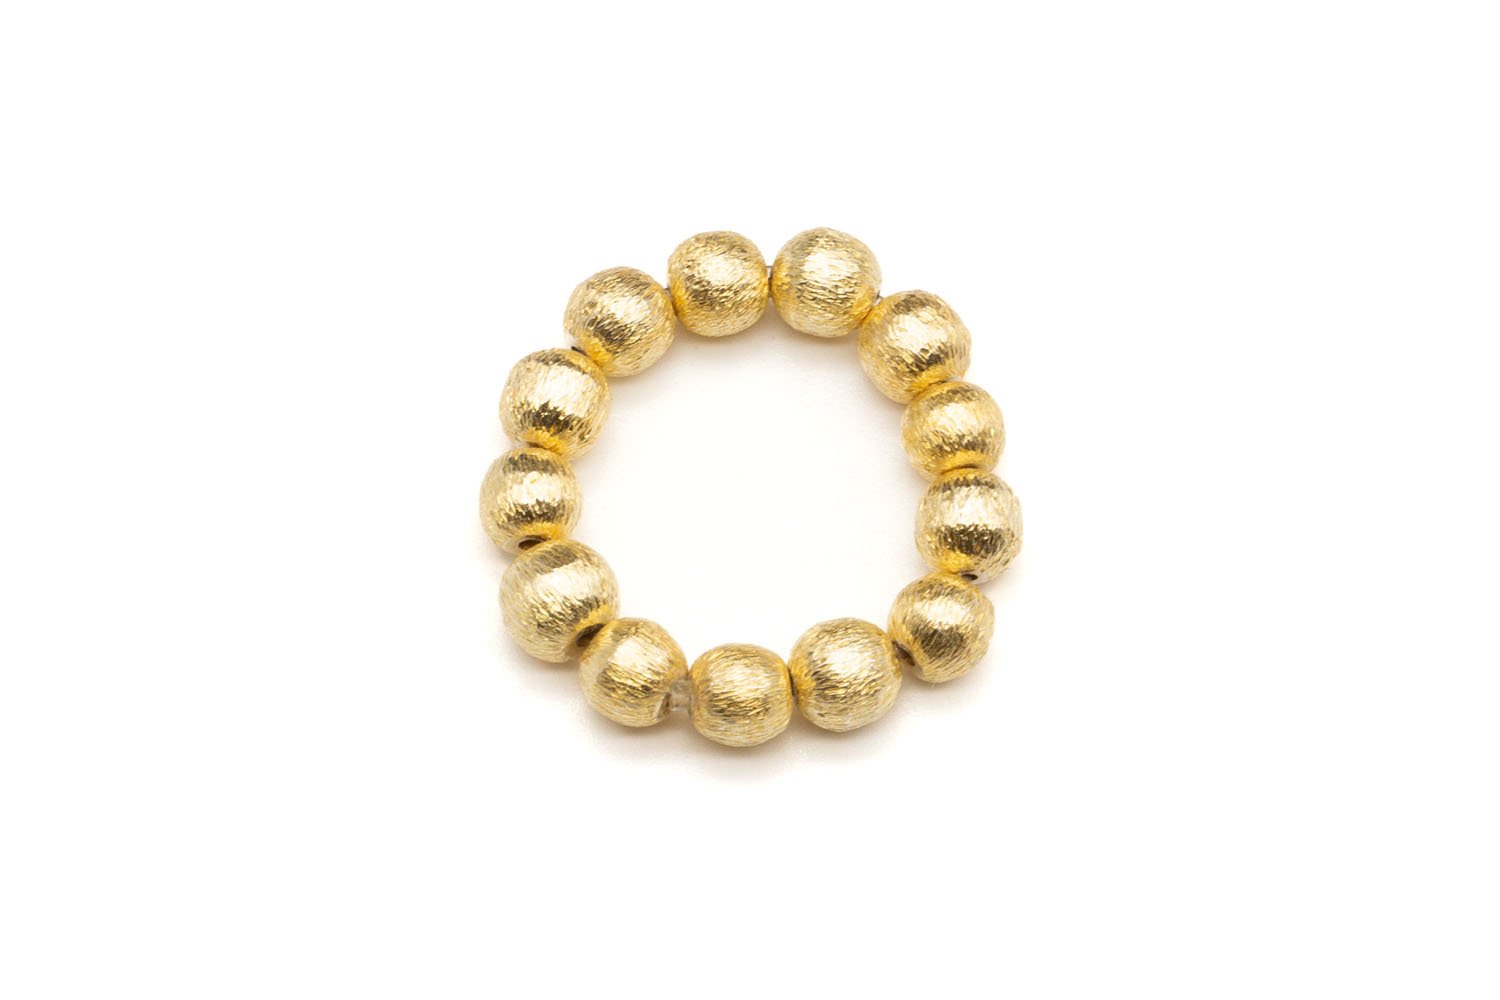 Ring Sterlingsilber vergoldet glänzend Perlen 5mm matt